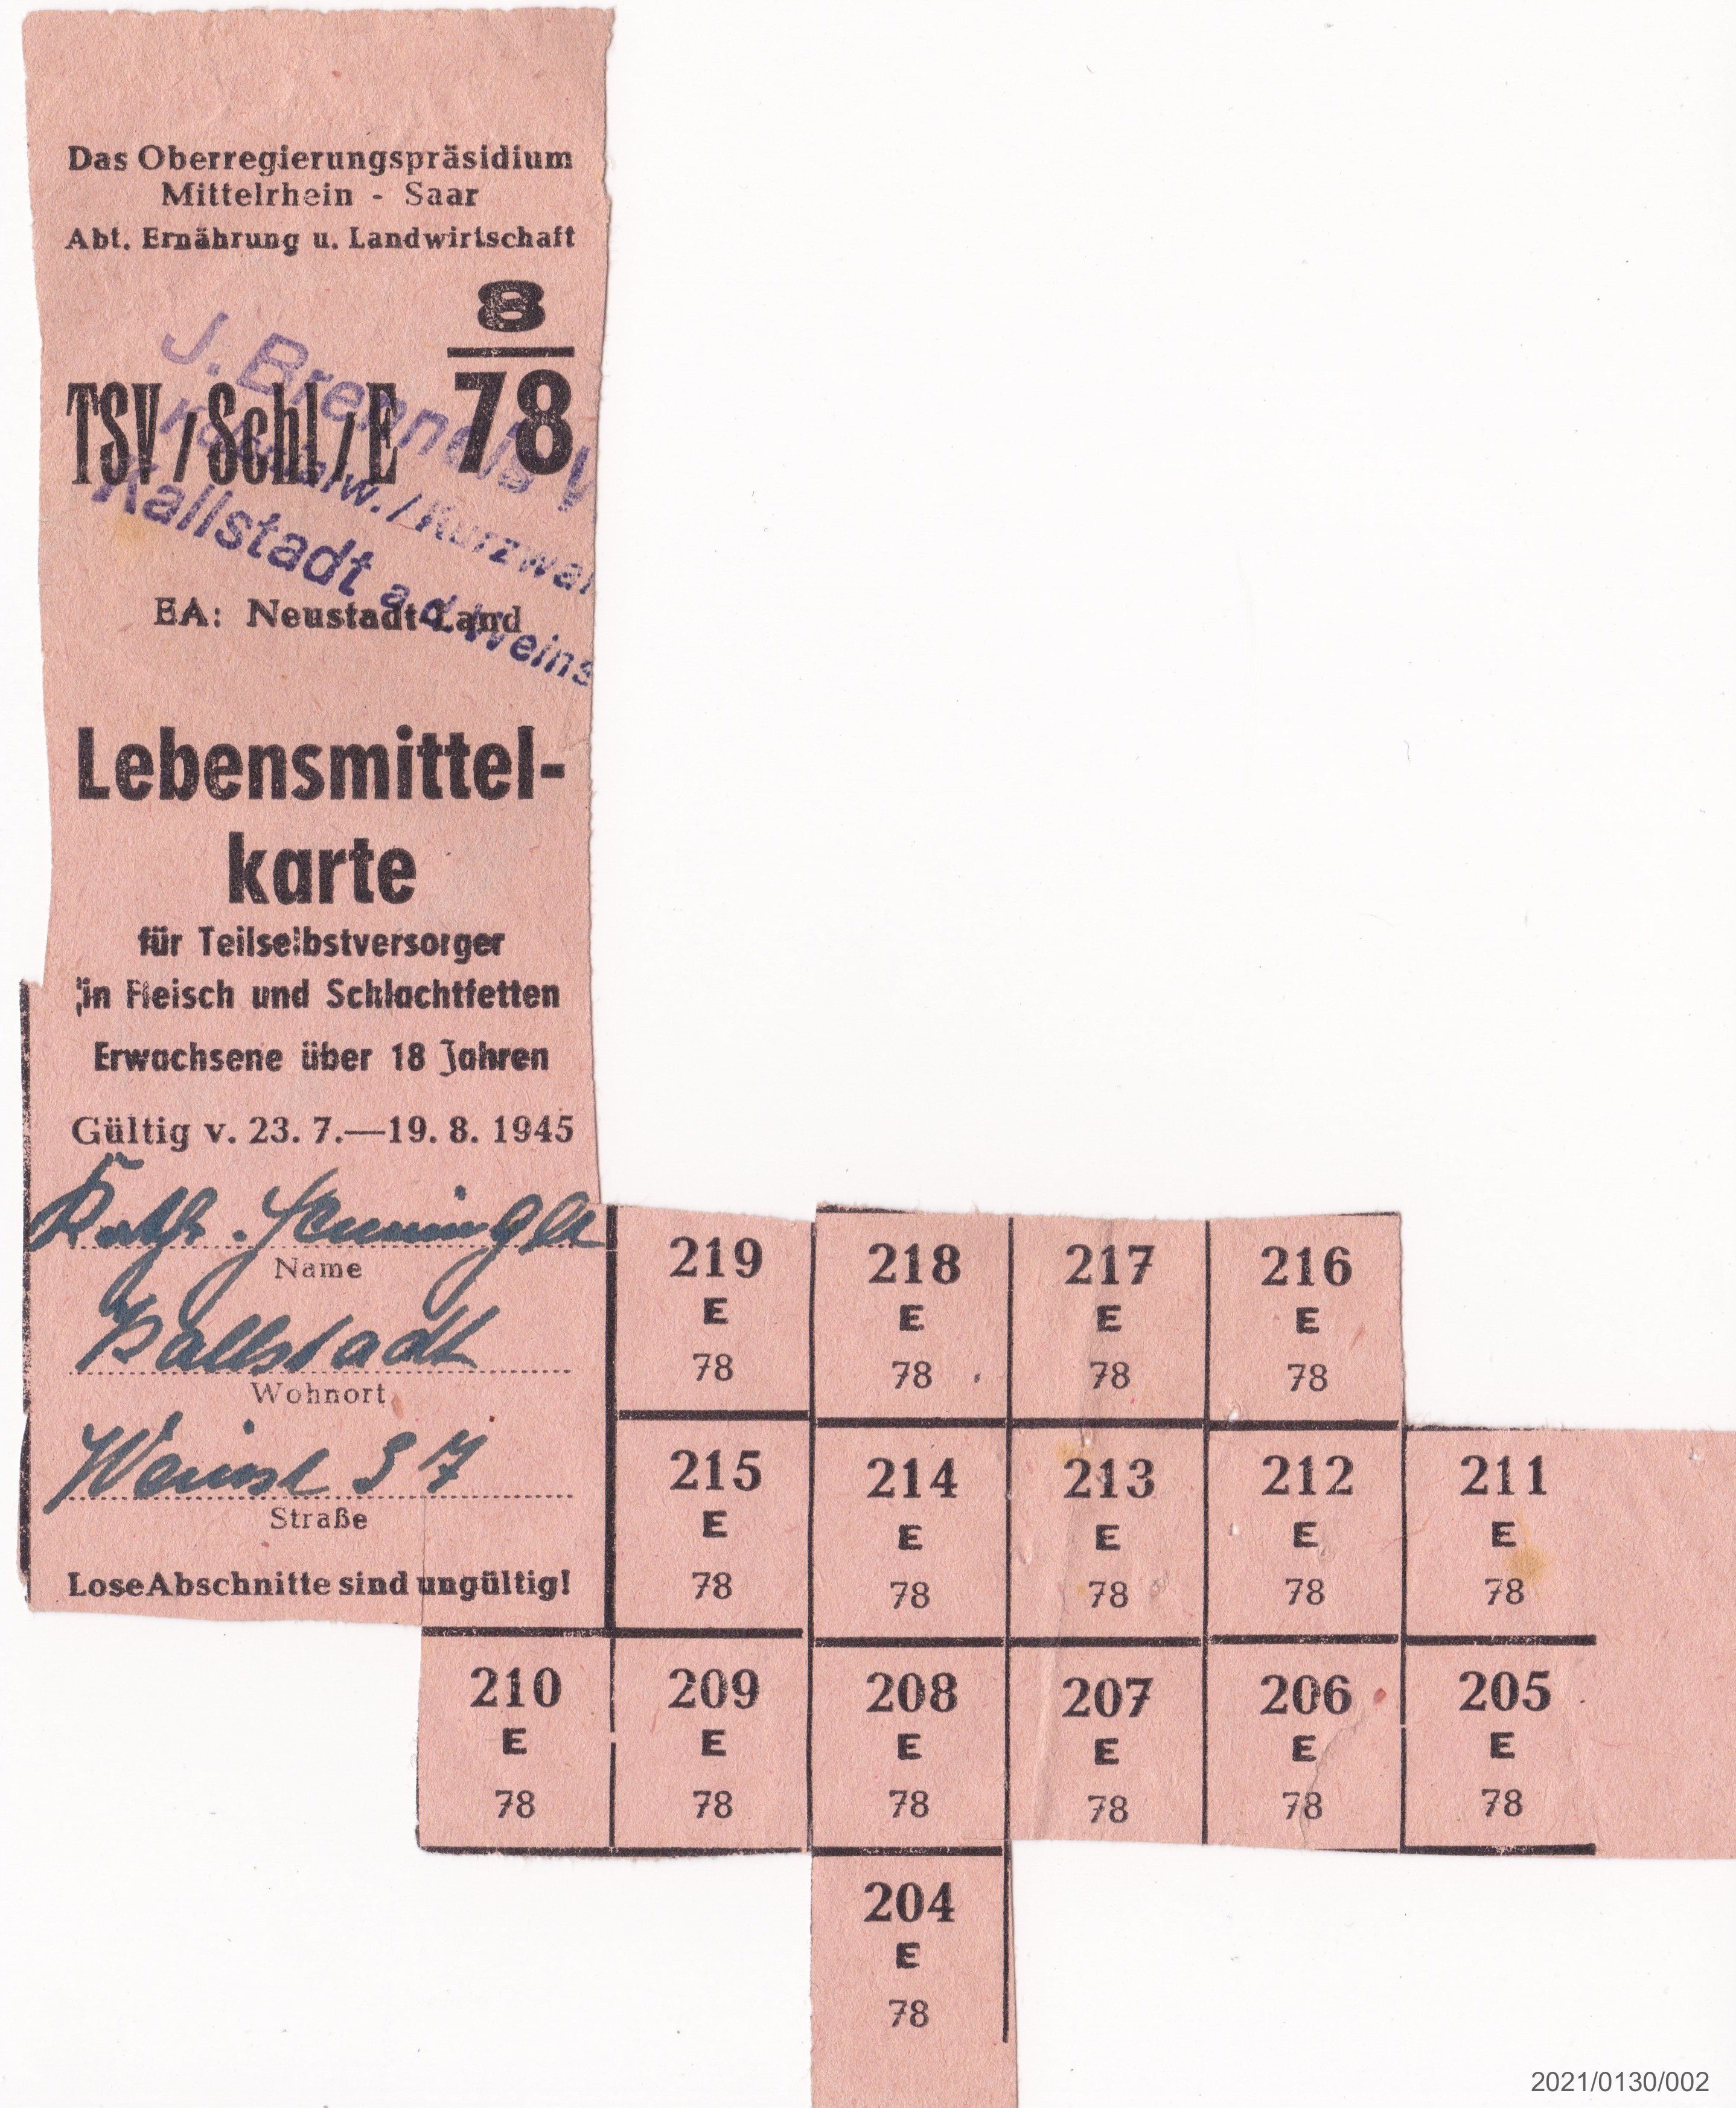 Weitere Lebensmittekarte für Teilselbstversorger in Fleisch und Schlachtfetten August 1945 (Museumsgesellschaft Bad Dürkheim e. V. CC BY-NC-SA)